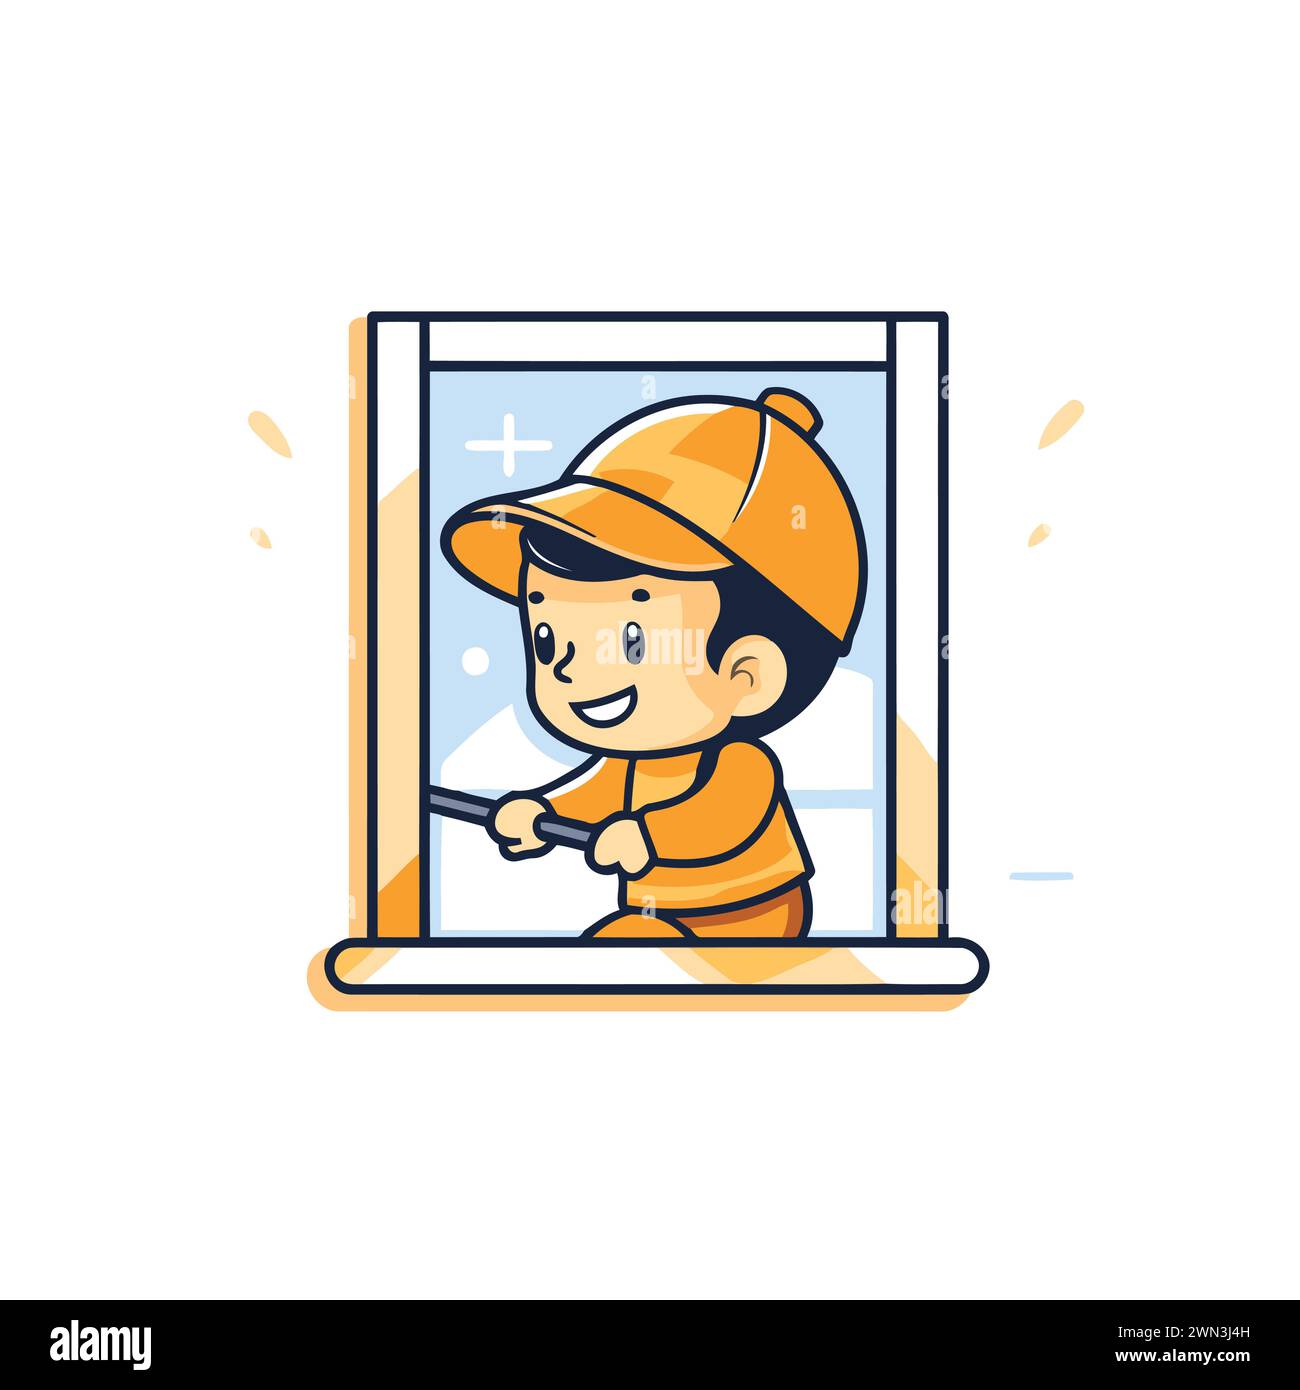 Süßer Junge mit Helm und Handschuhen, der durch das Fenster schaut. Illustration des flachen Vektors. Stock Vektor